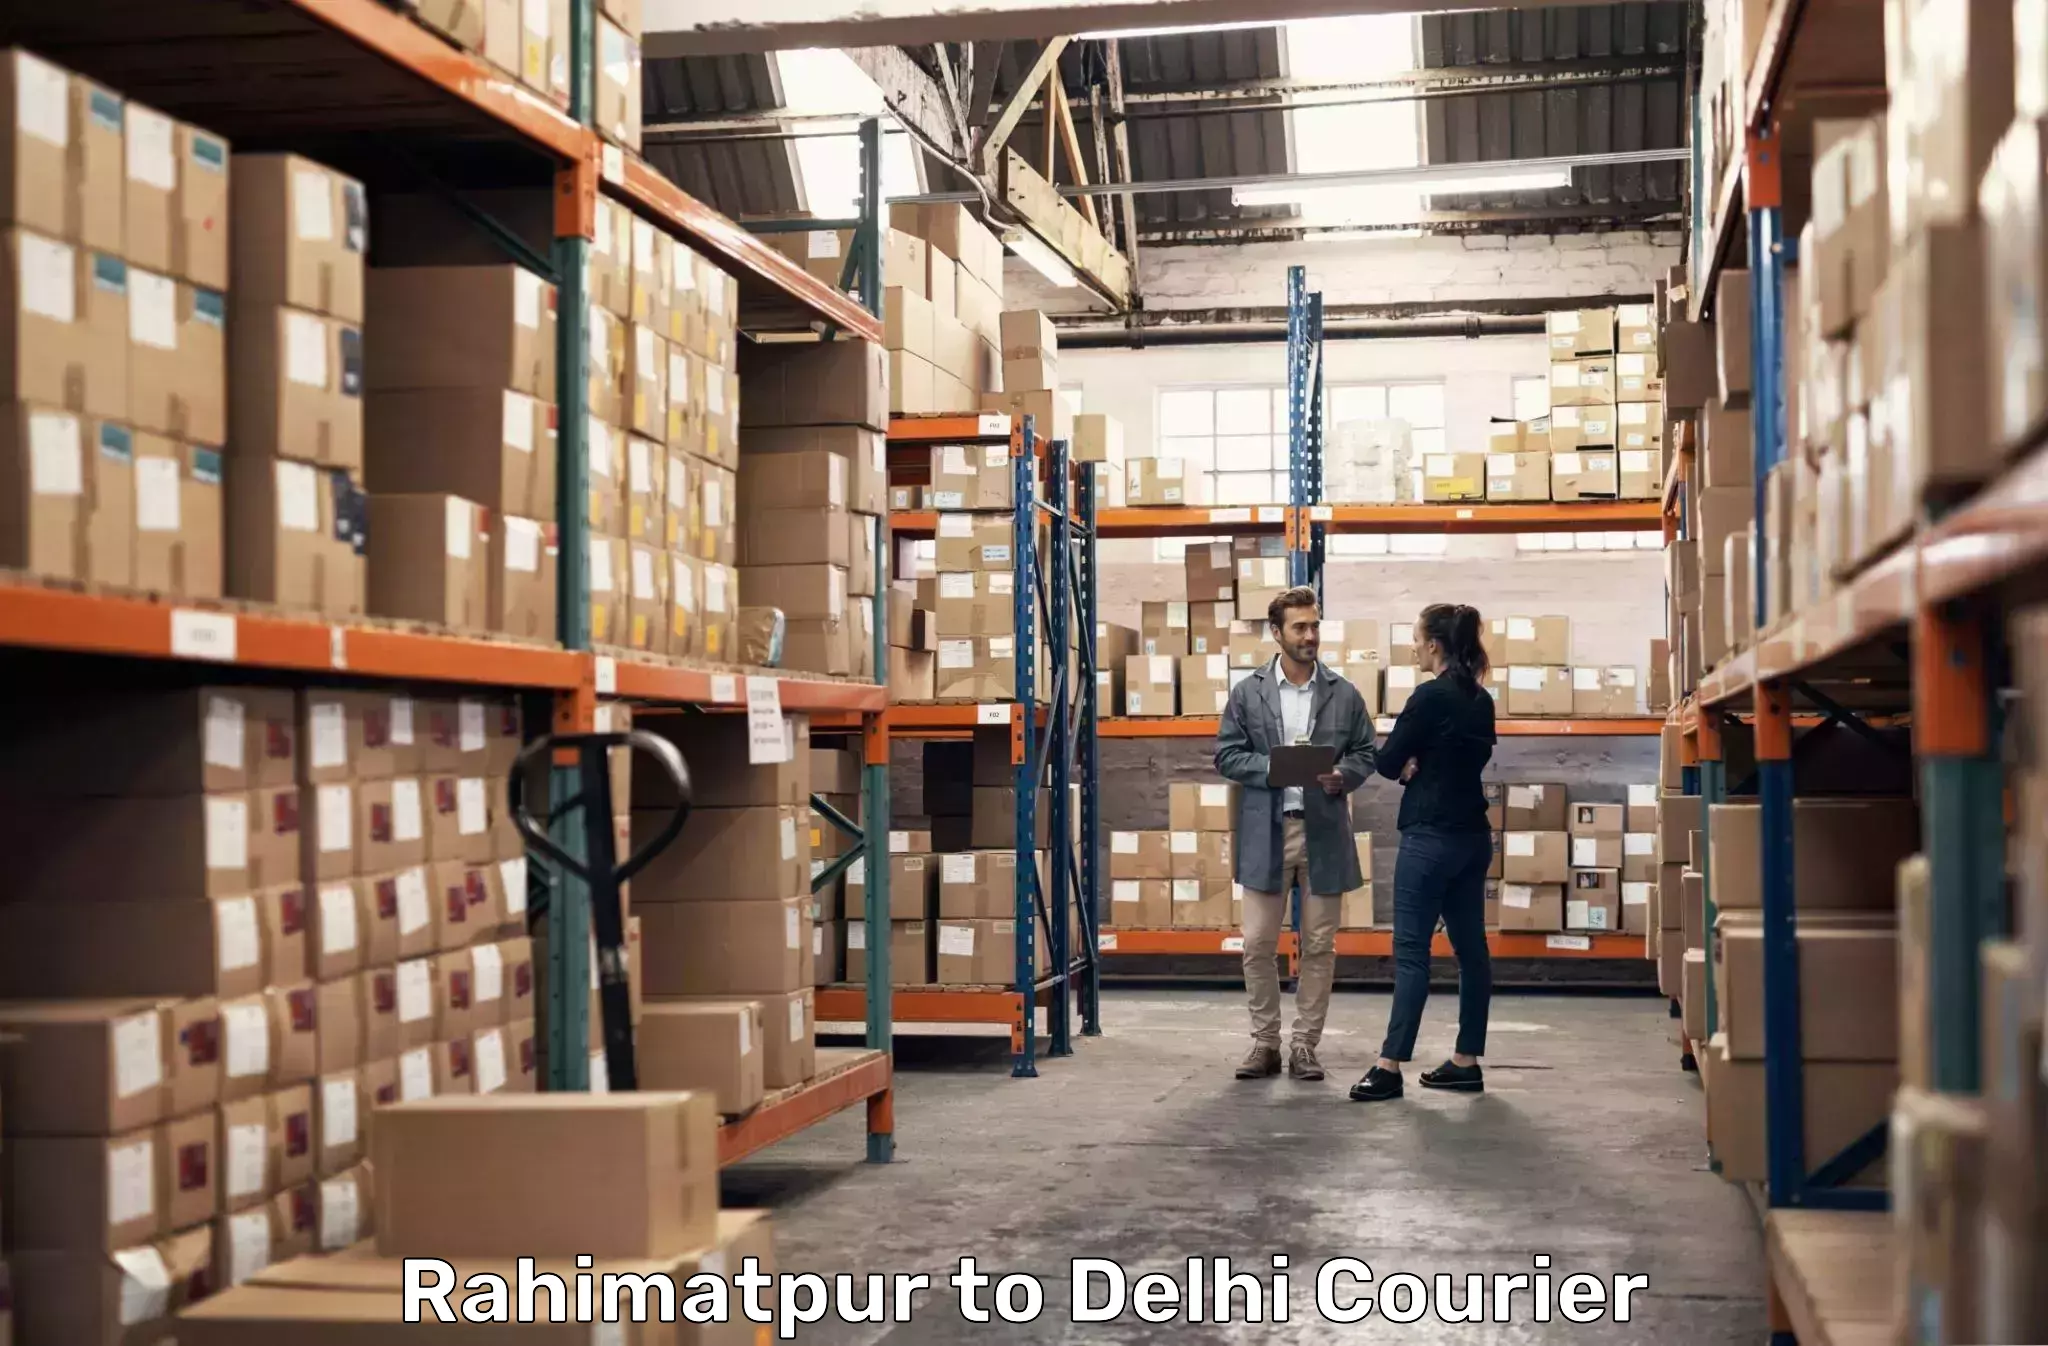 Urgent courier needs Rahimatpur to IIT Delhi